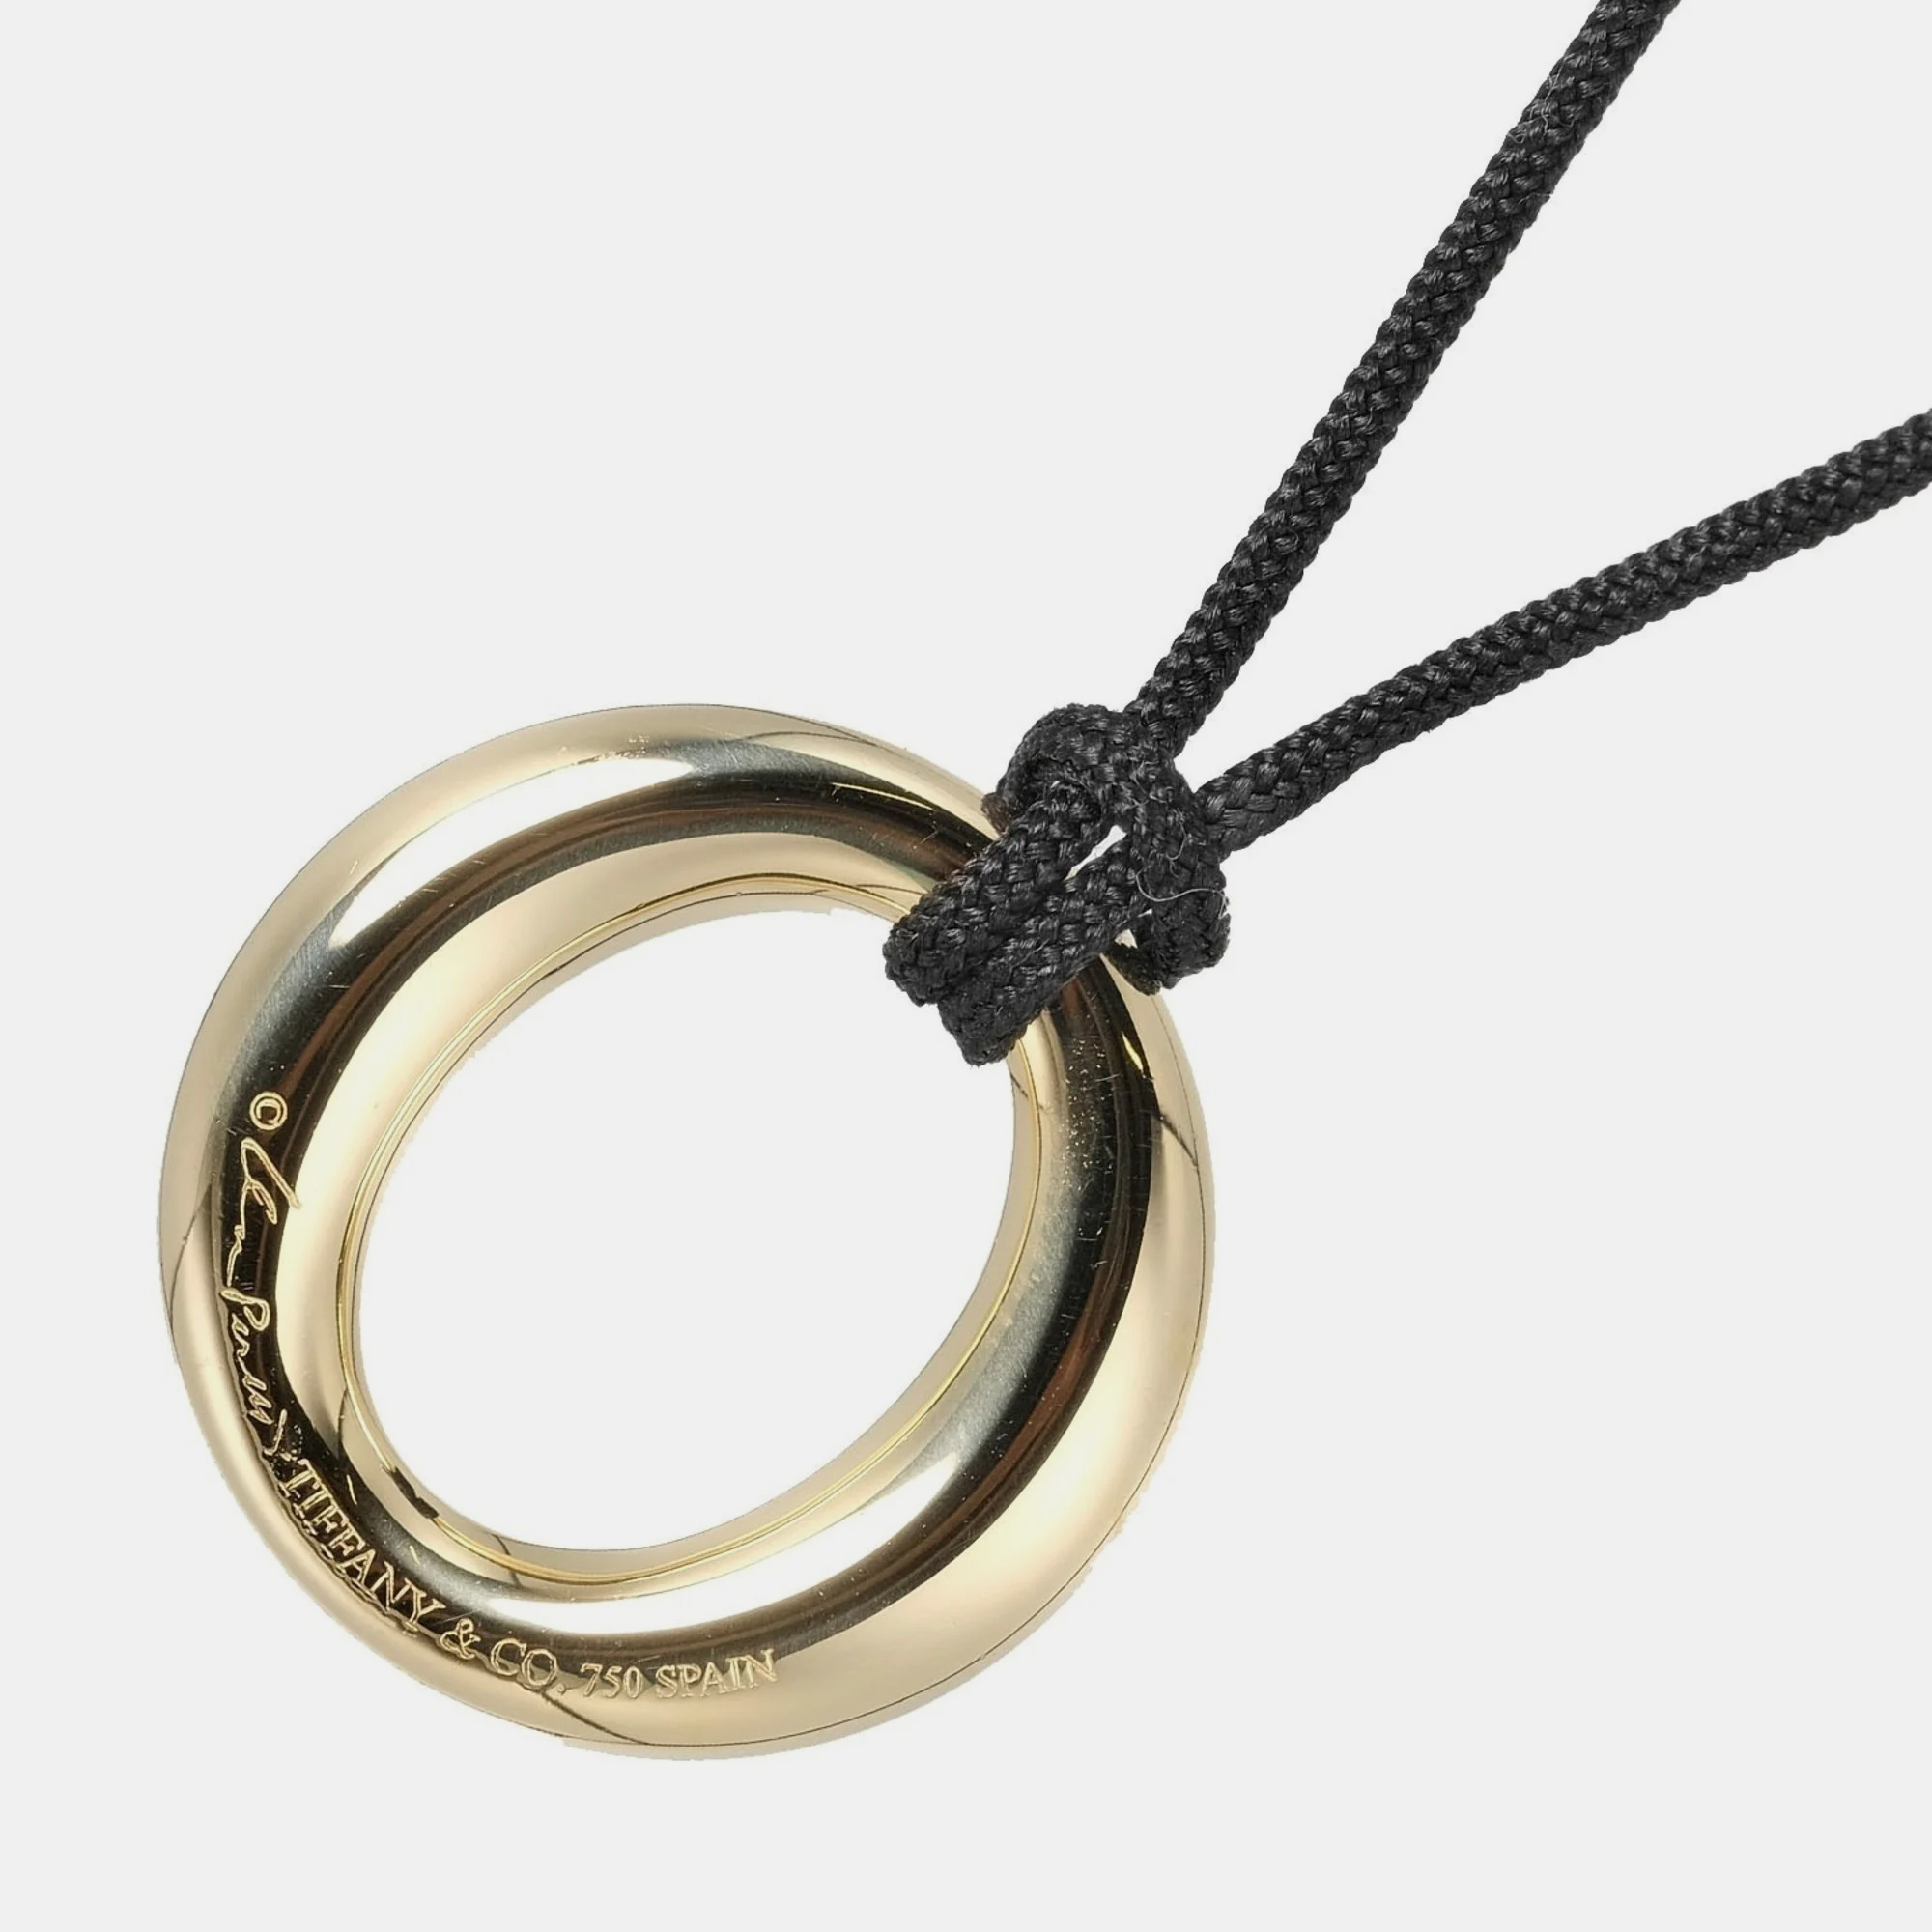 Tiffany & Co. Elsa Peretti Sevillana 18K Yellow Gold Diamond Necklace